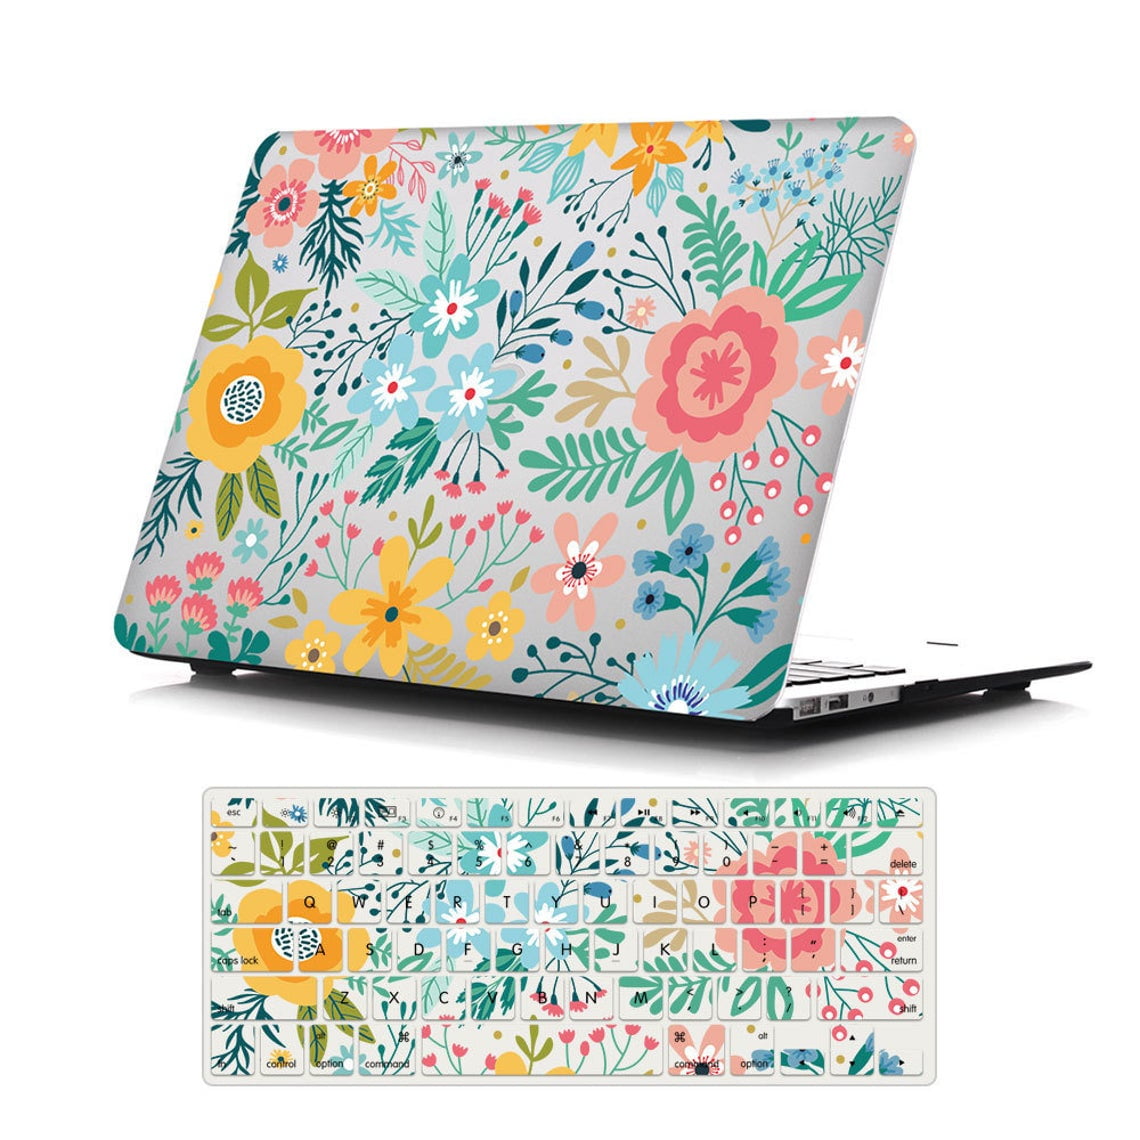 Floral Macbook Air 13 Case 2021 Marbled Macbook Pro 16 Case Flowers Macbook Pro 13 Case 2020 Marble Macbook 12 Case Cute Macbook 16 2021